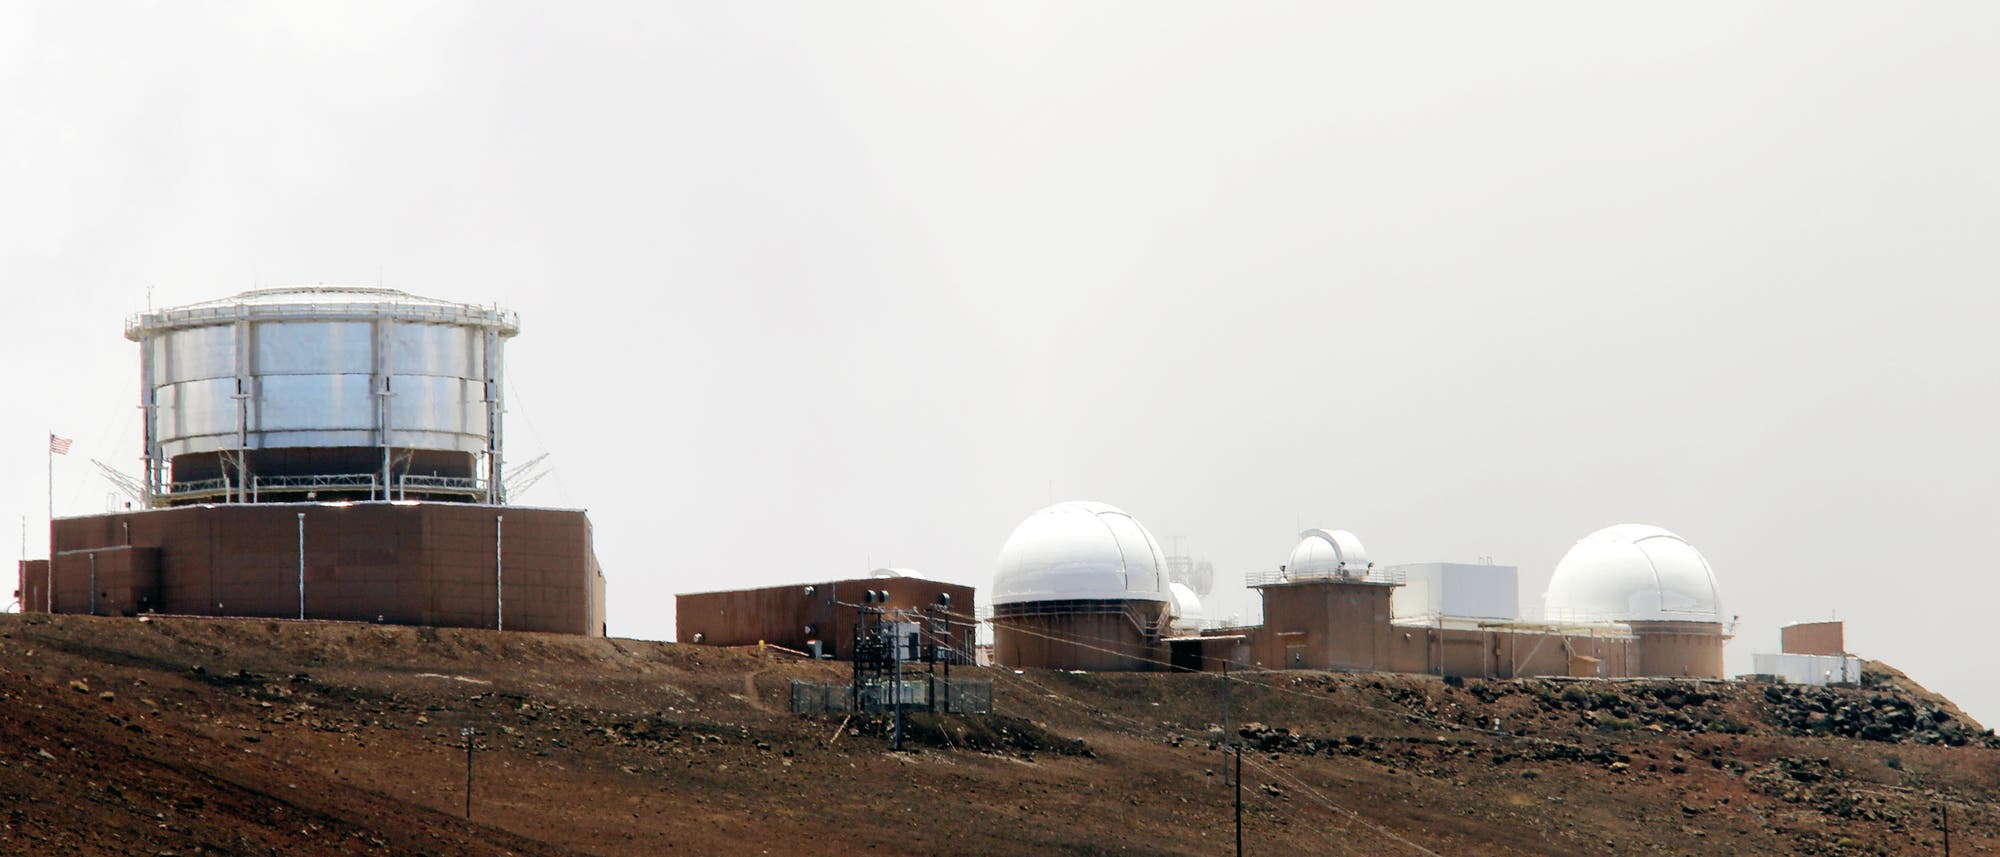 Auf dem Gipfel des Haleakala-Kraters auf der Insel Maui im Haleakala-Nationalpark befindet sich ein astronomisches Forschungsobservatorium, das Haleakalā Observatory. 